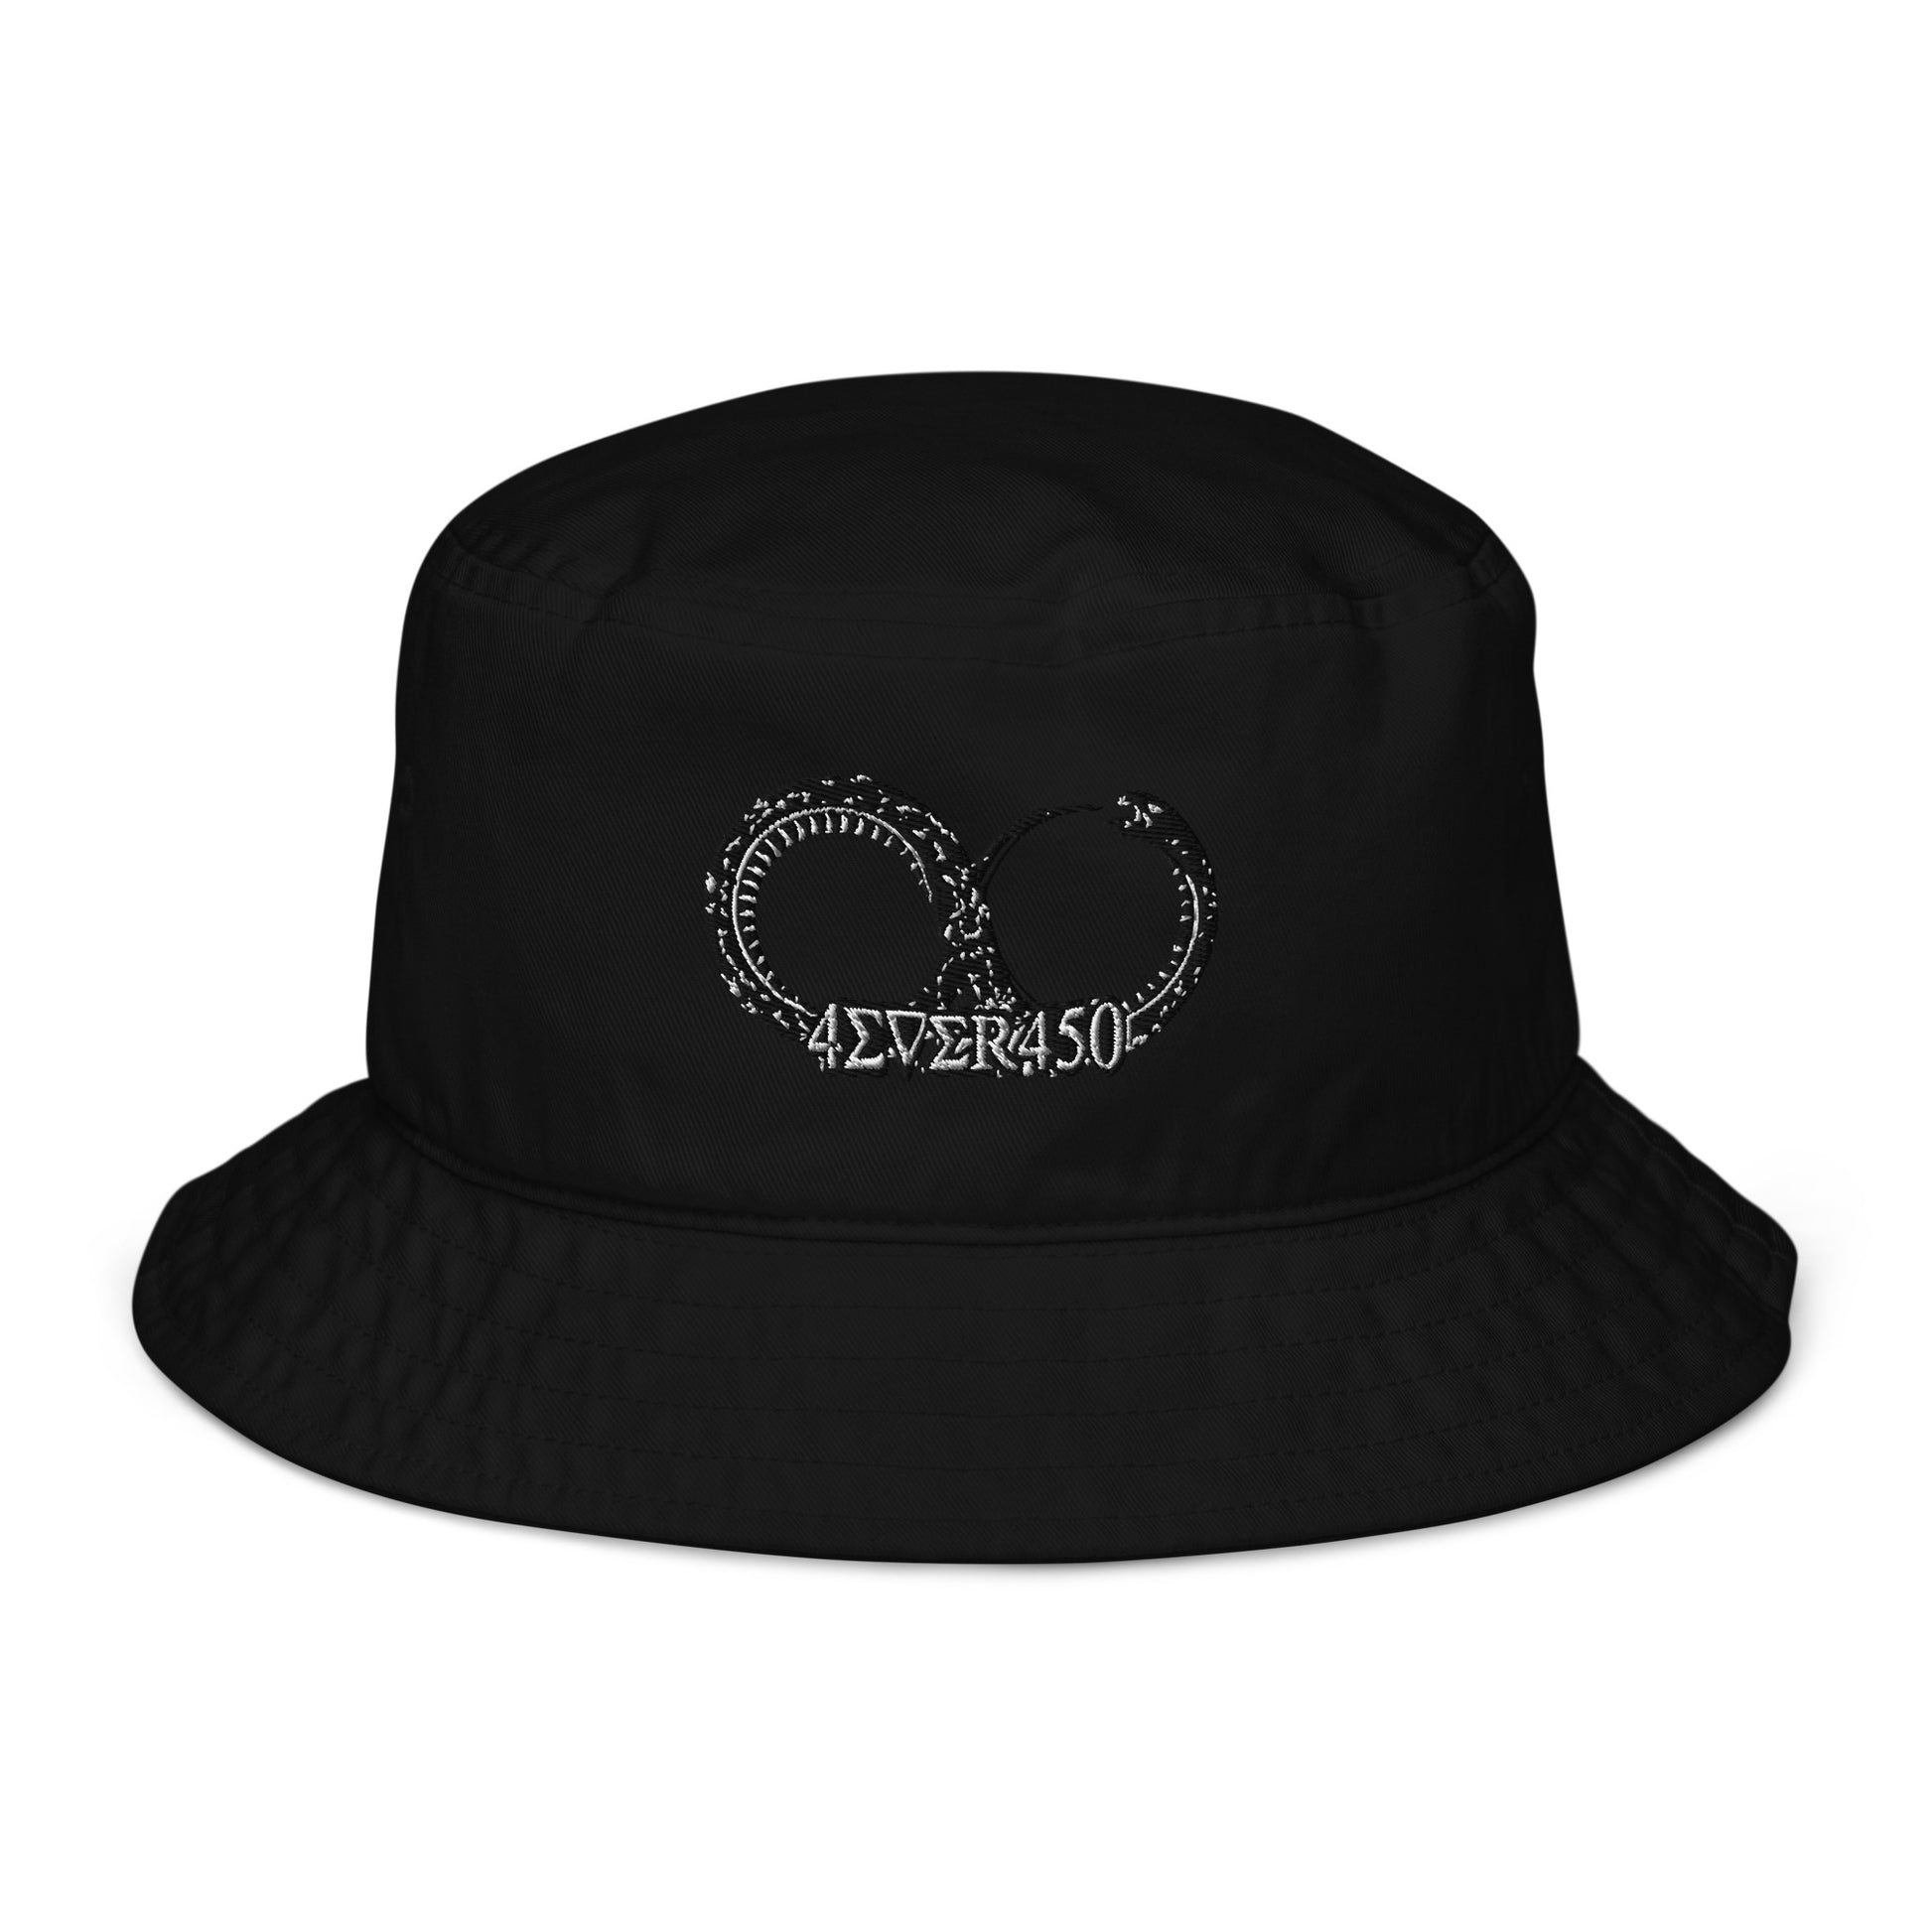 Frequency bucket hat - Iamdubeu